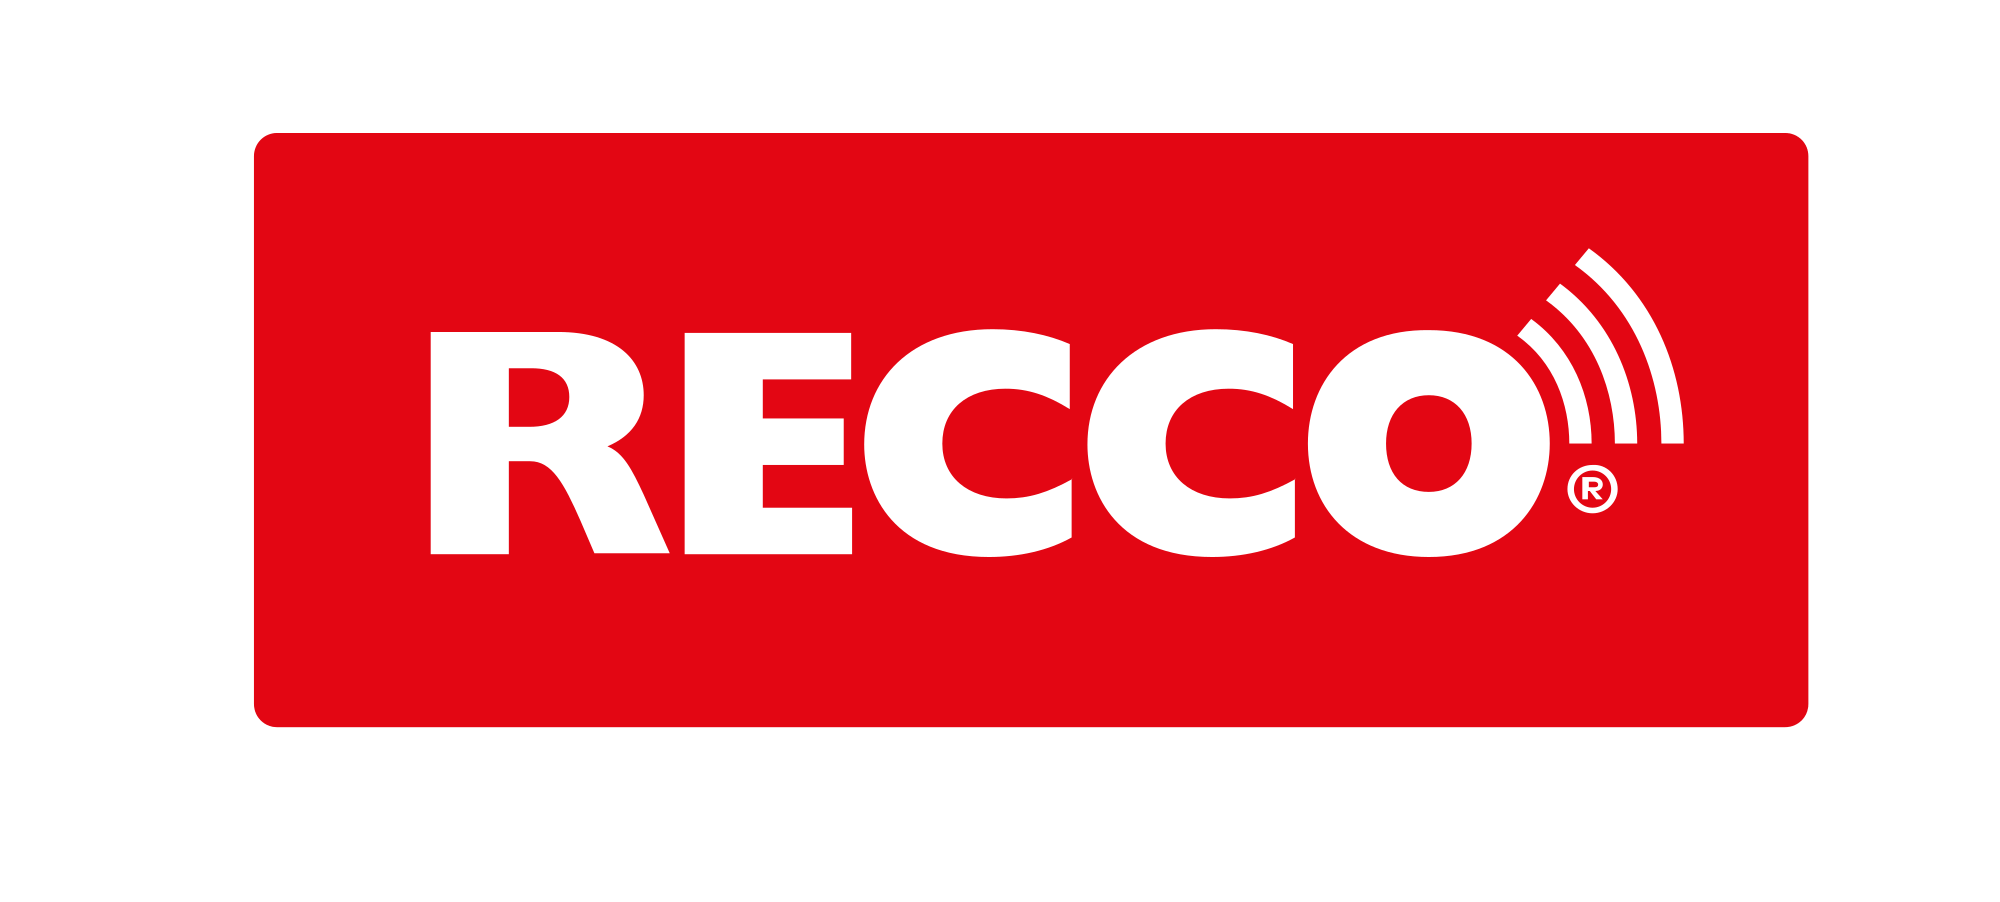 Recco Rescue System